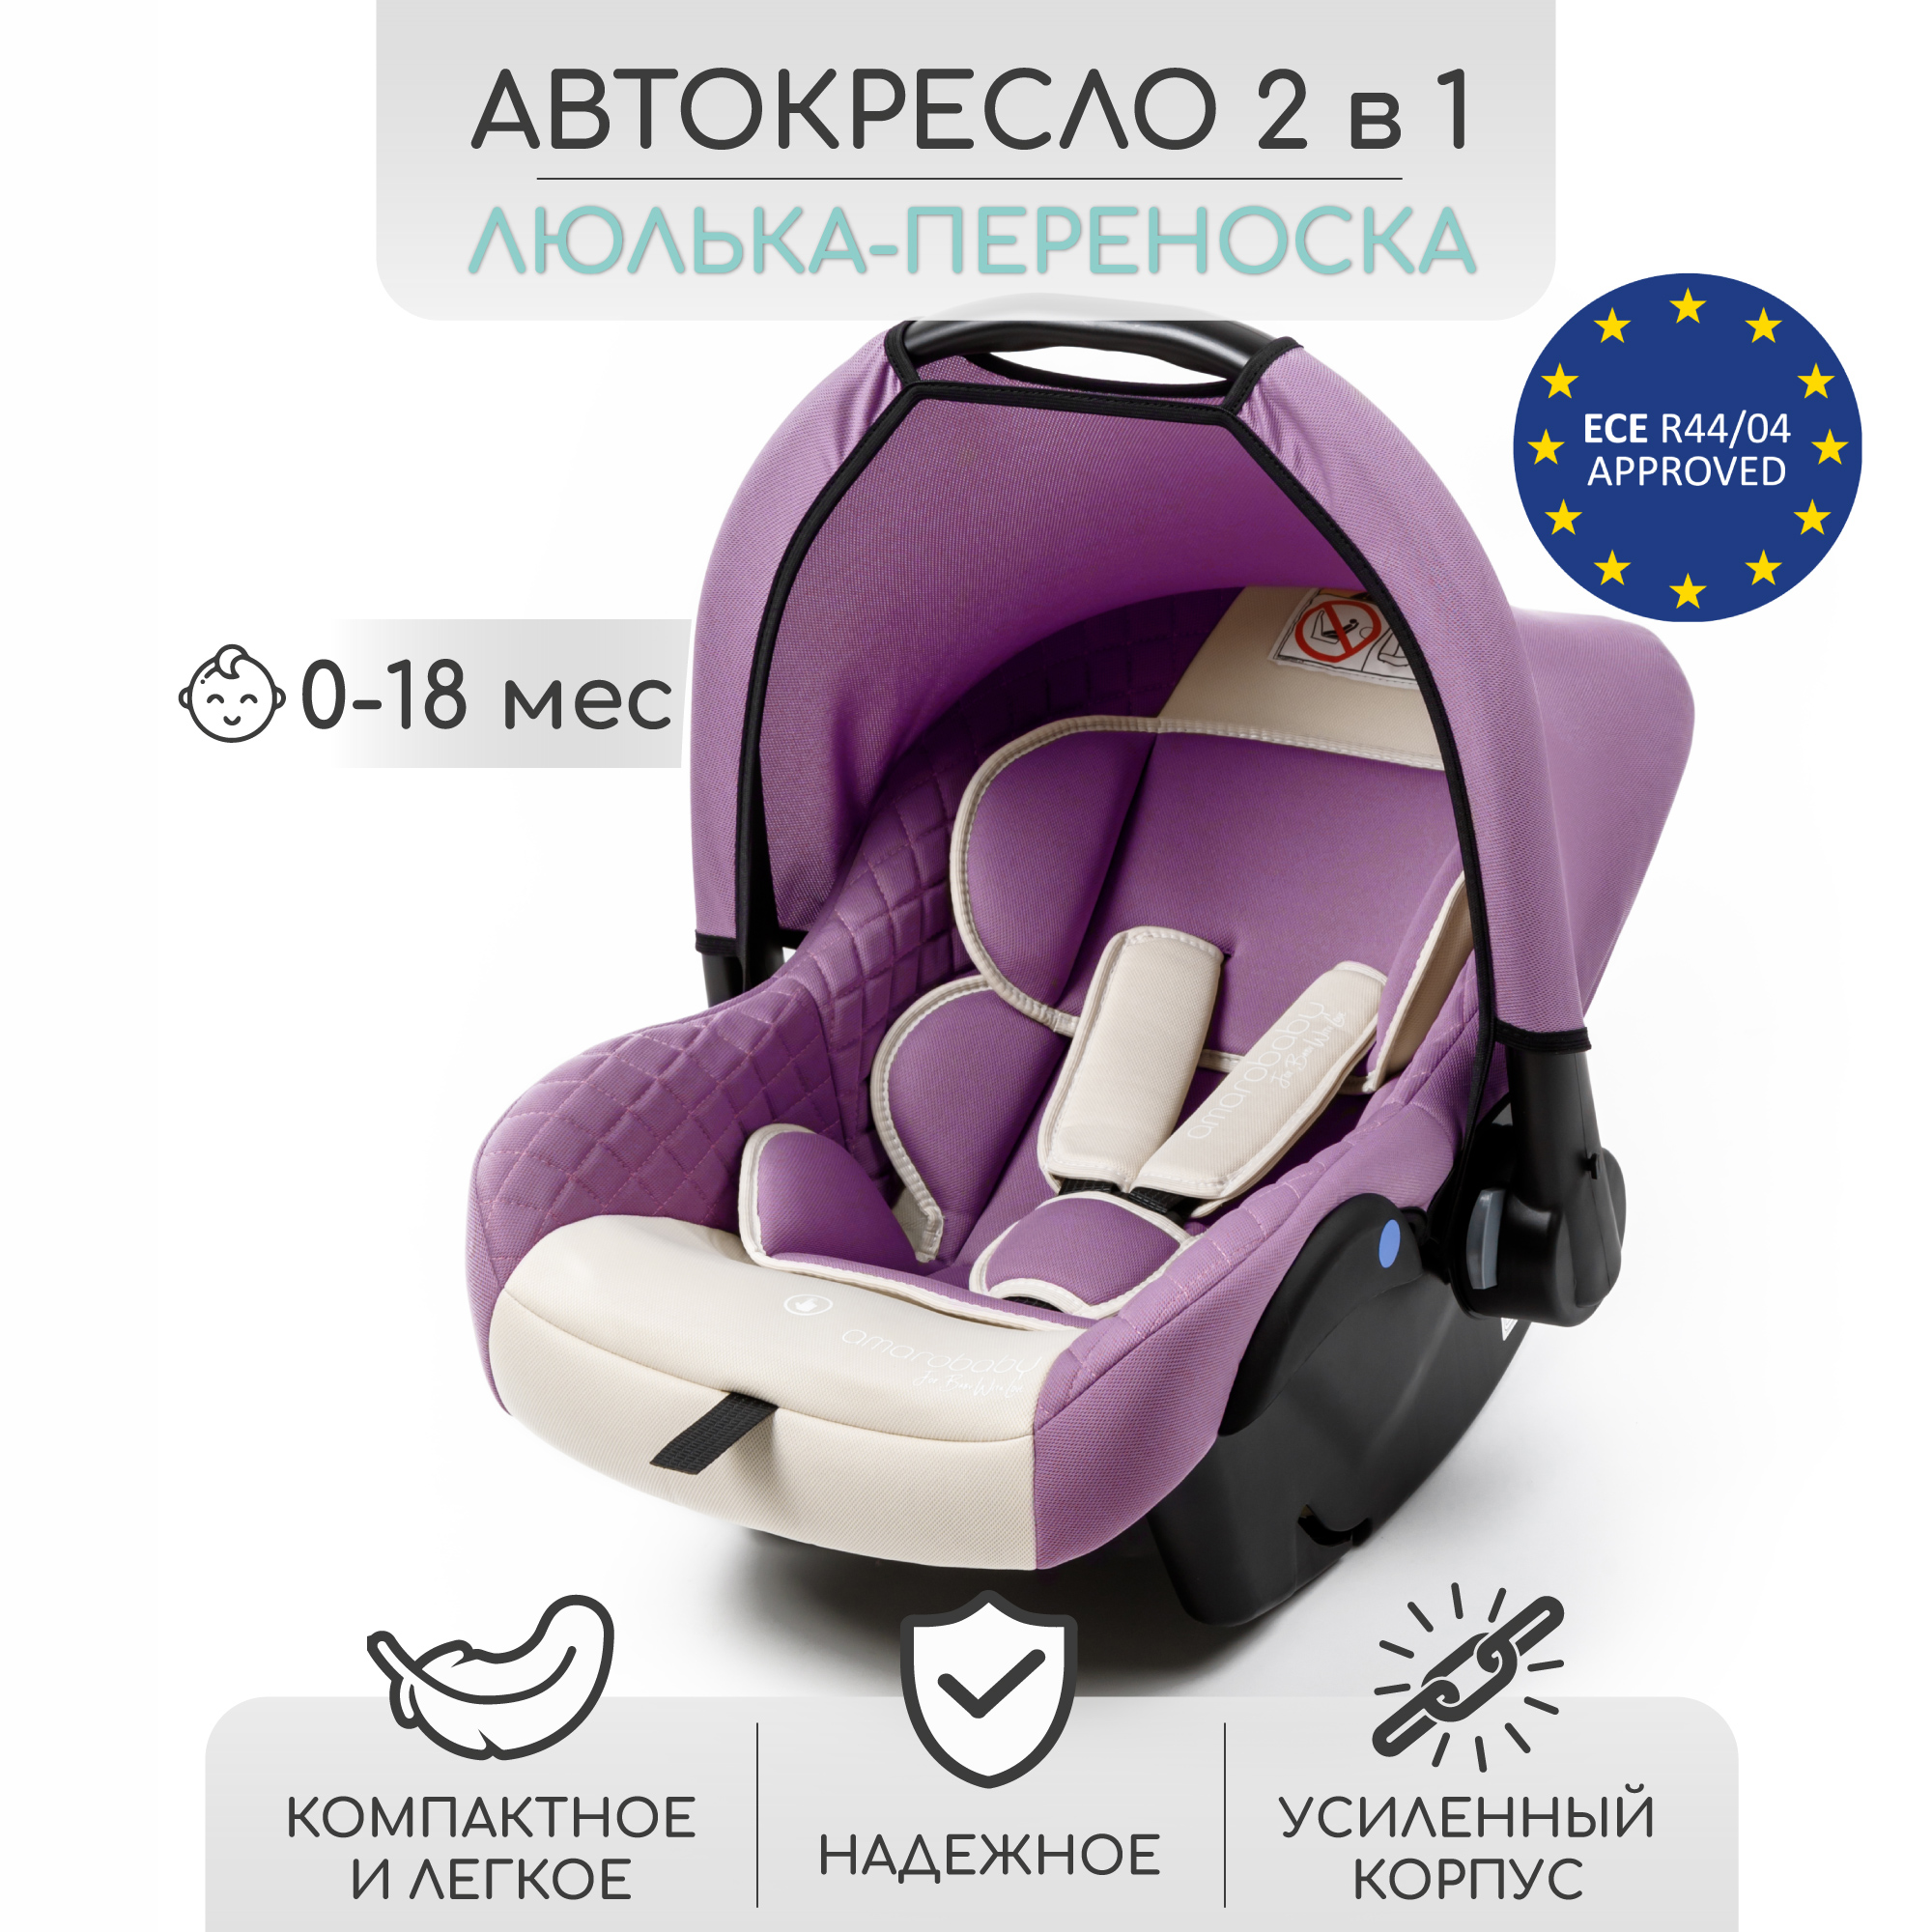 Автокресло детское Amarobaby Baby comfort, группа 0+, светло-фиолетовый/светло-бежевый автокресло little car 9 36кг comfort красный 124492